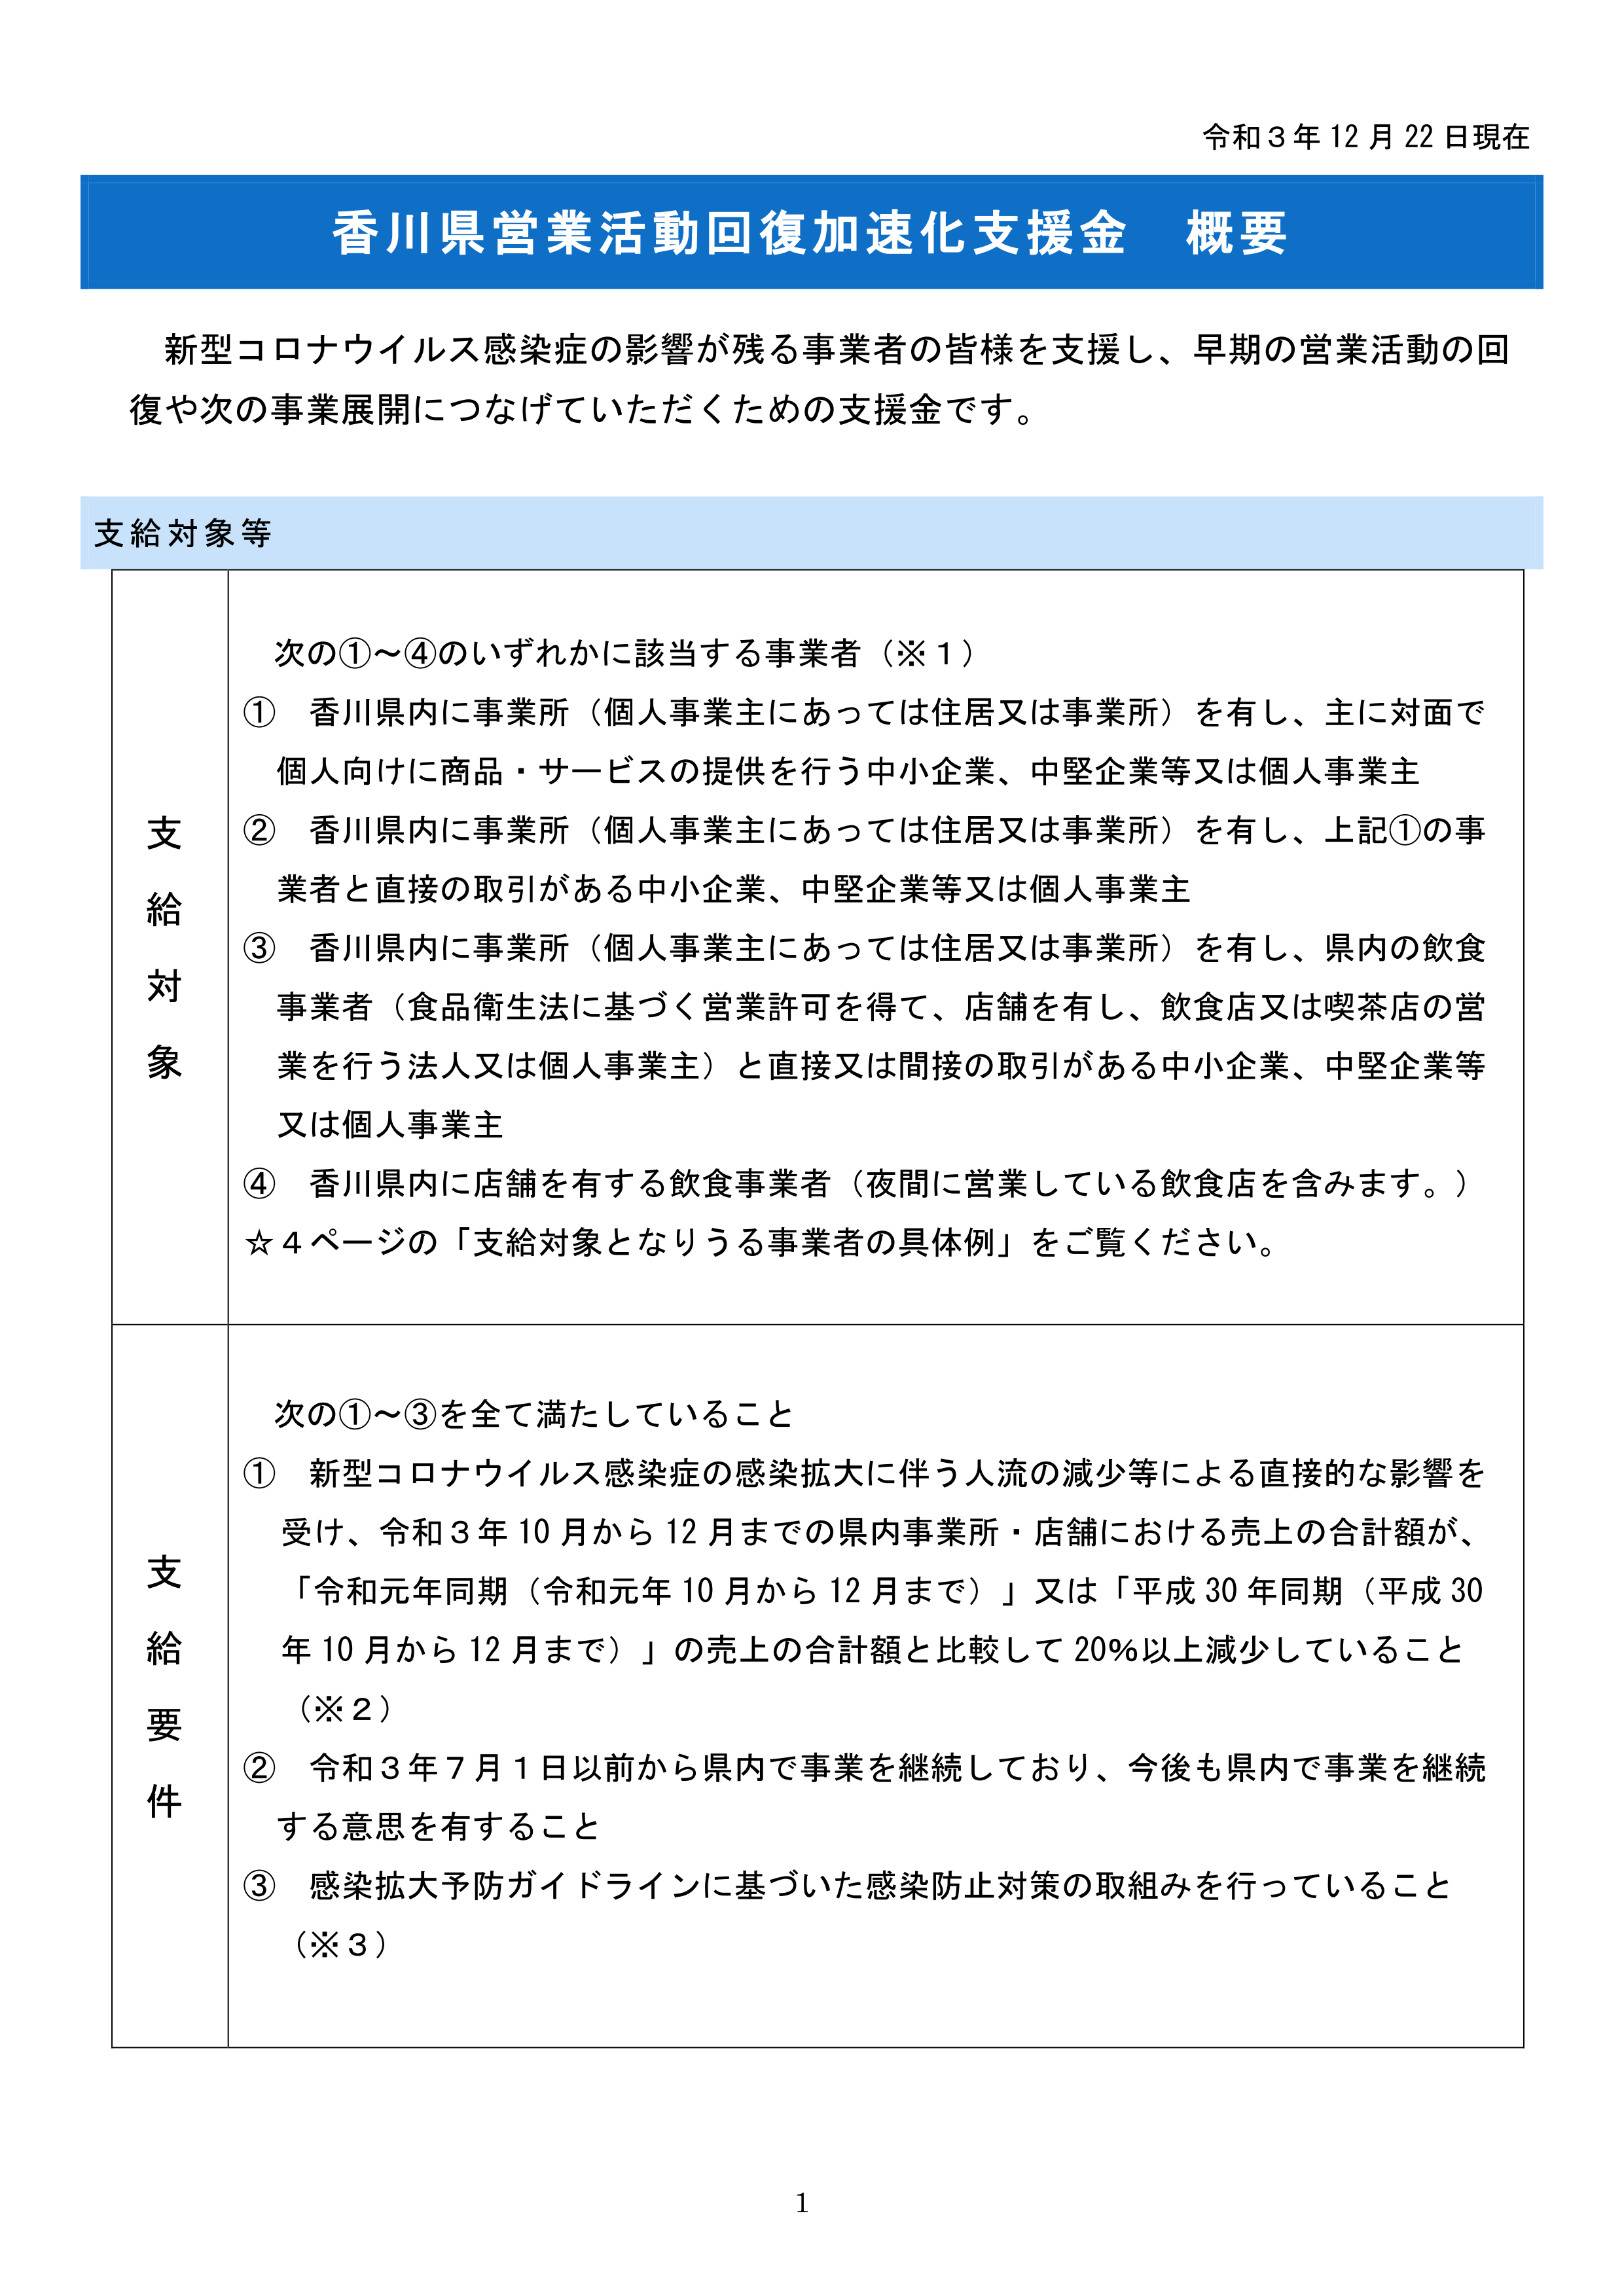 「香川県営業活動回復加速化支援金」の概要について（香川県）